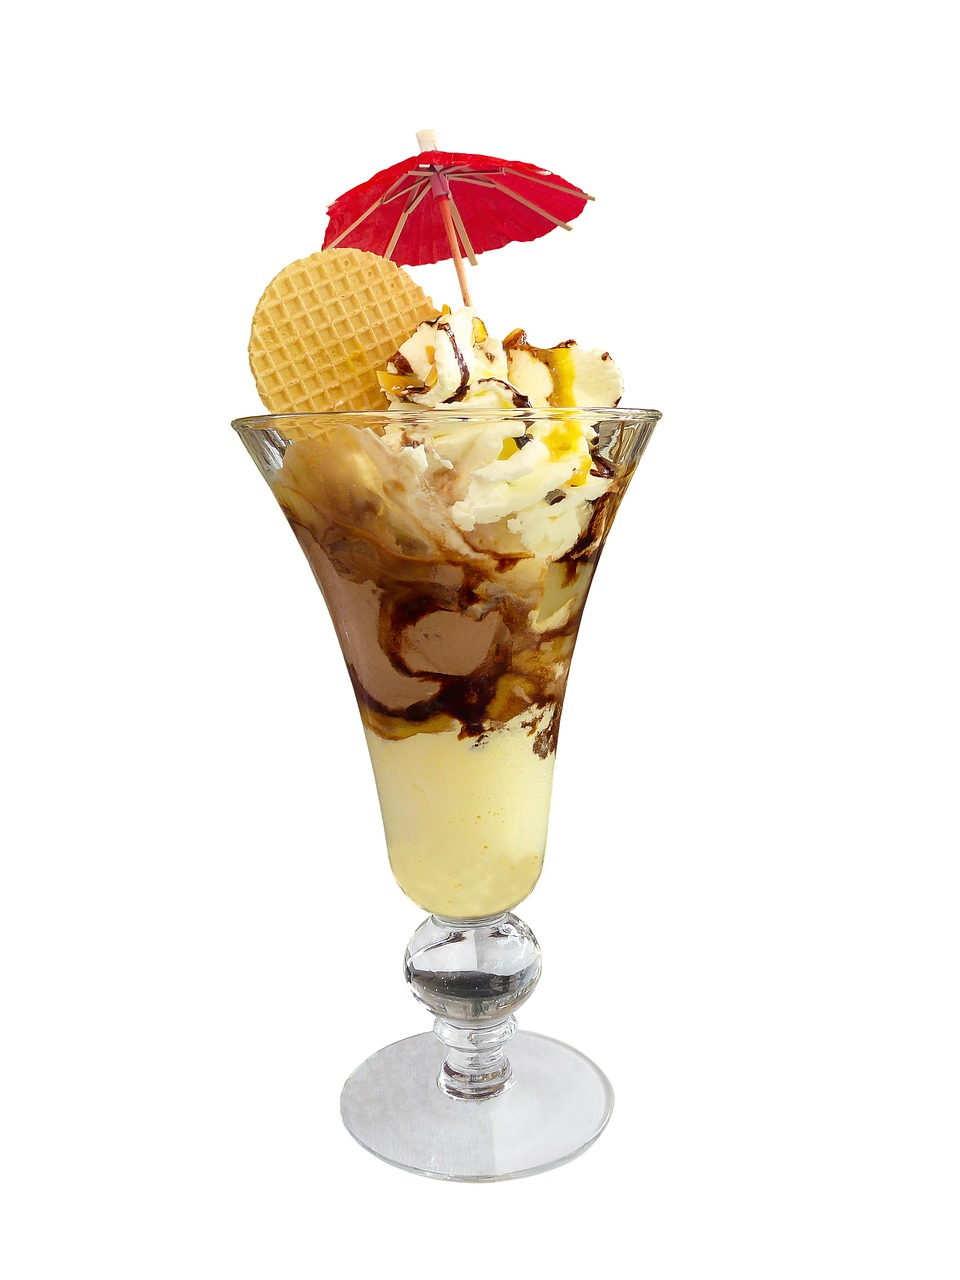 eat  ice  ice cream sundae free photo